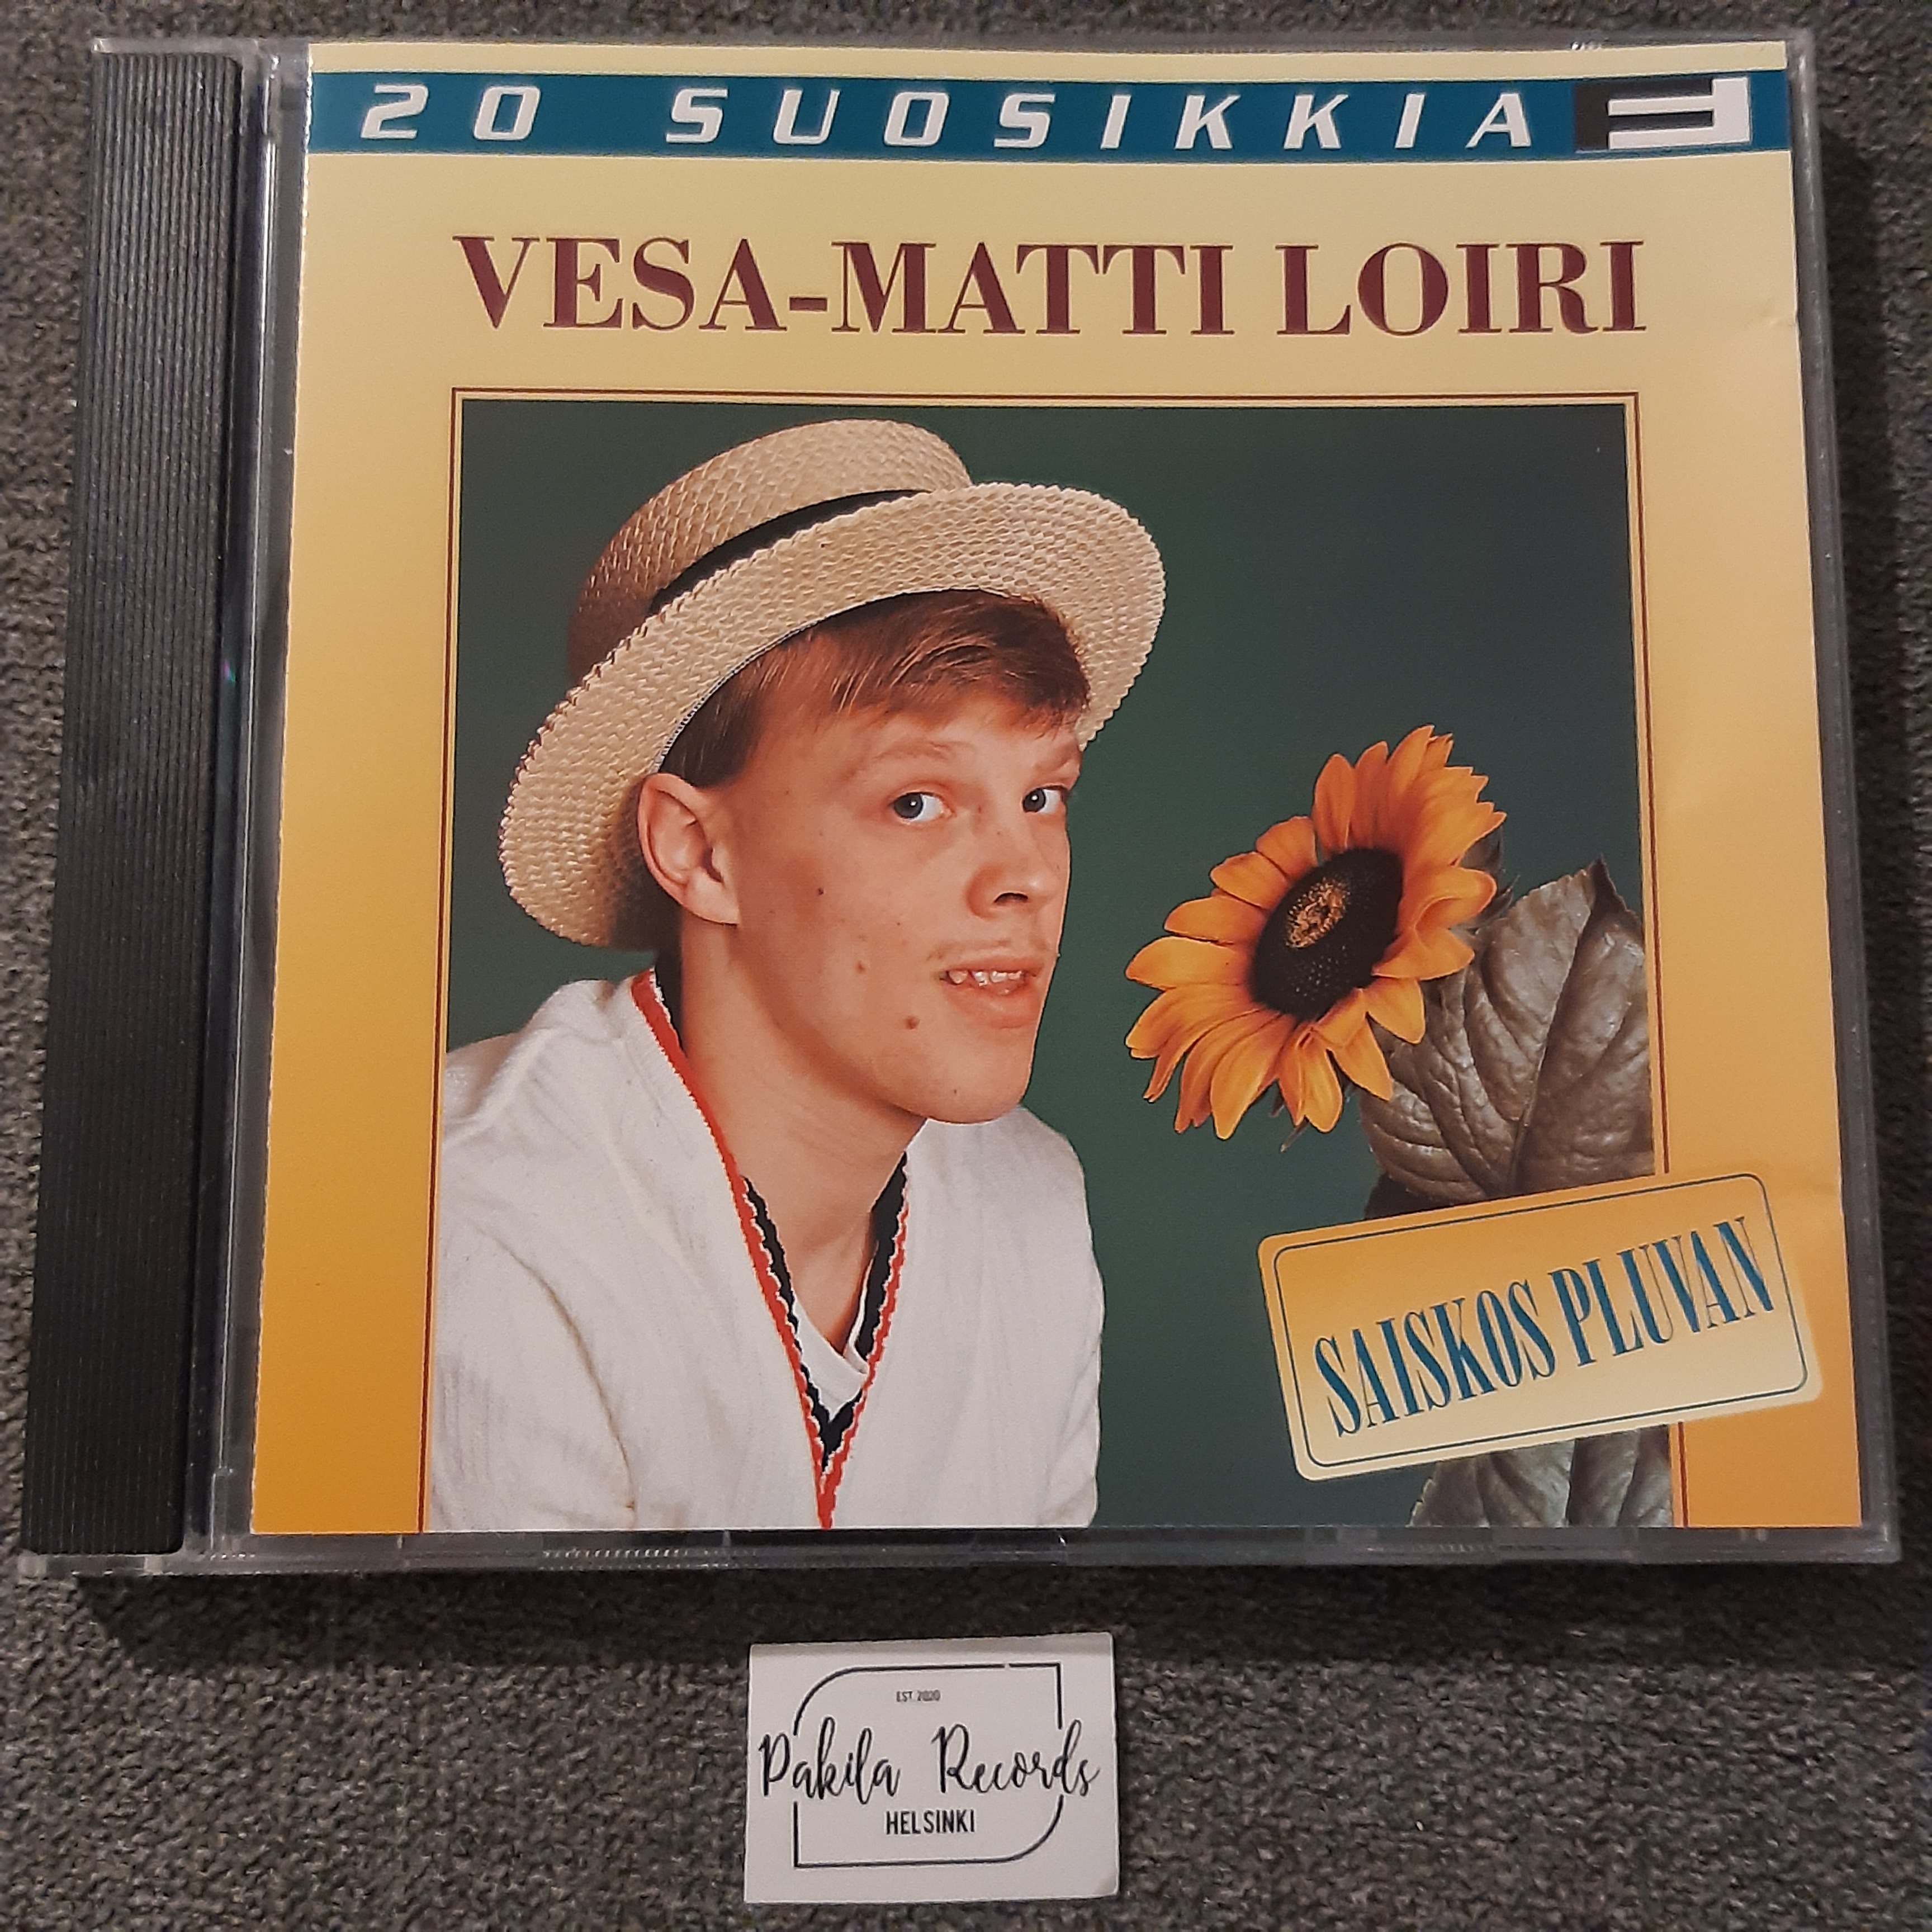 Vesa-Matti Loiri - Saiskos pluvan - CD (käytetty)